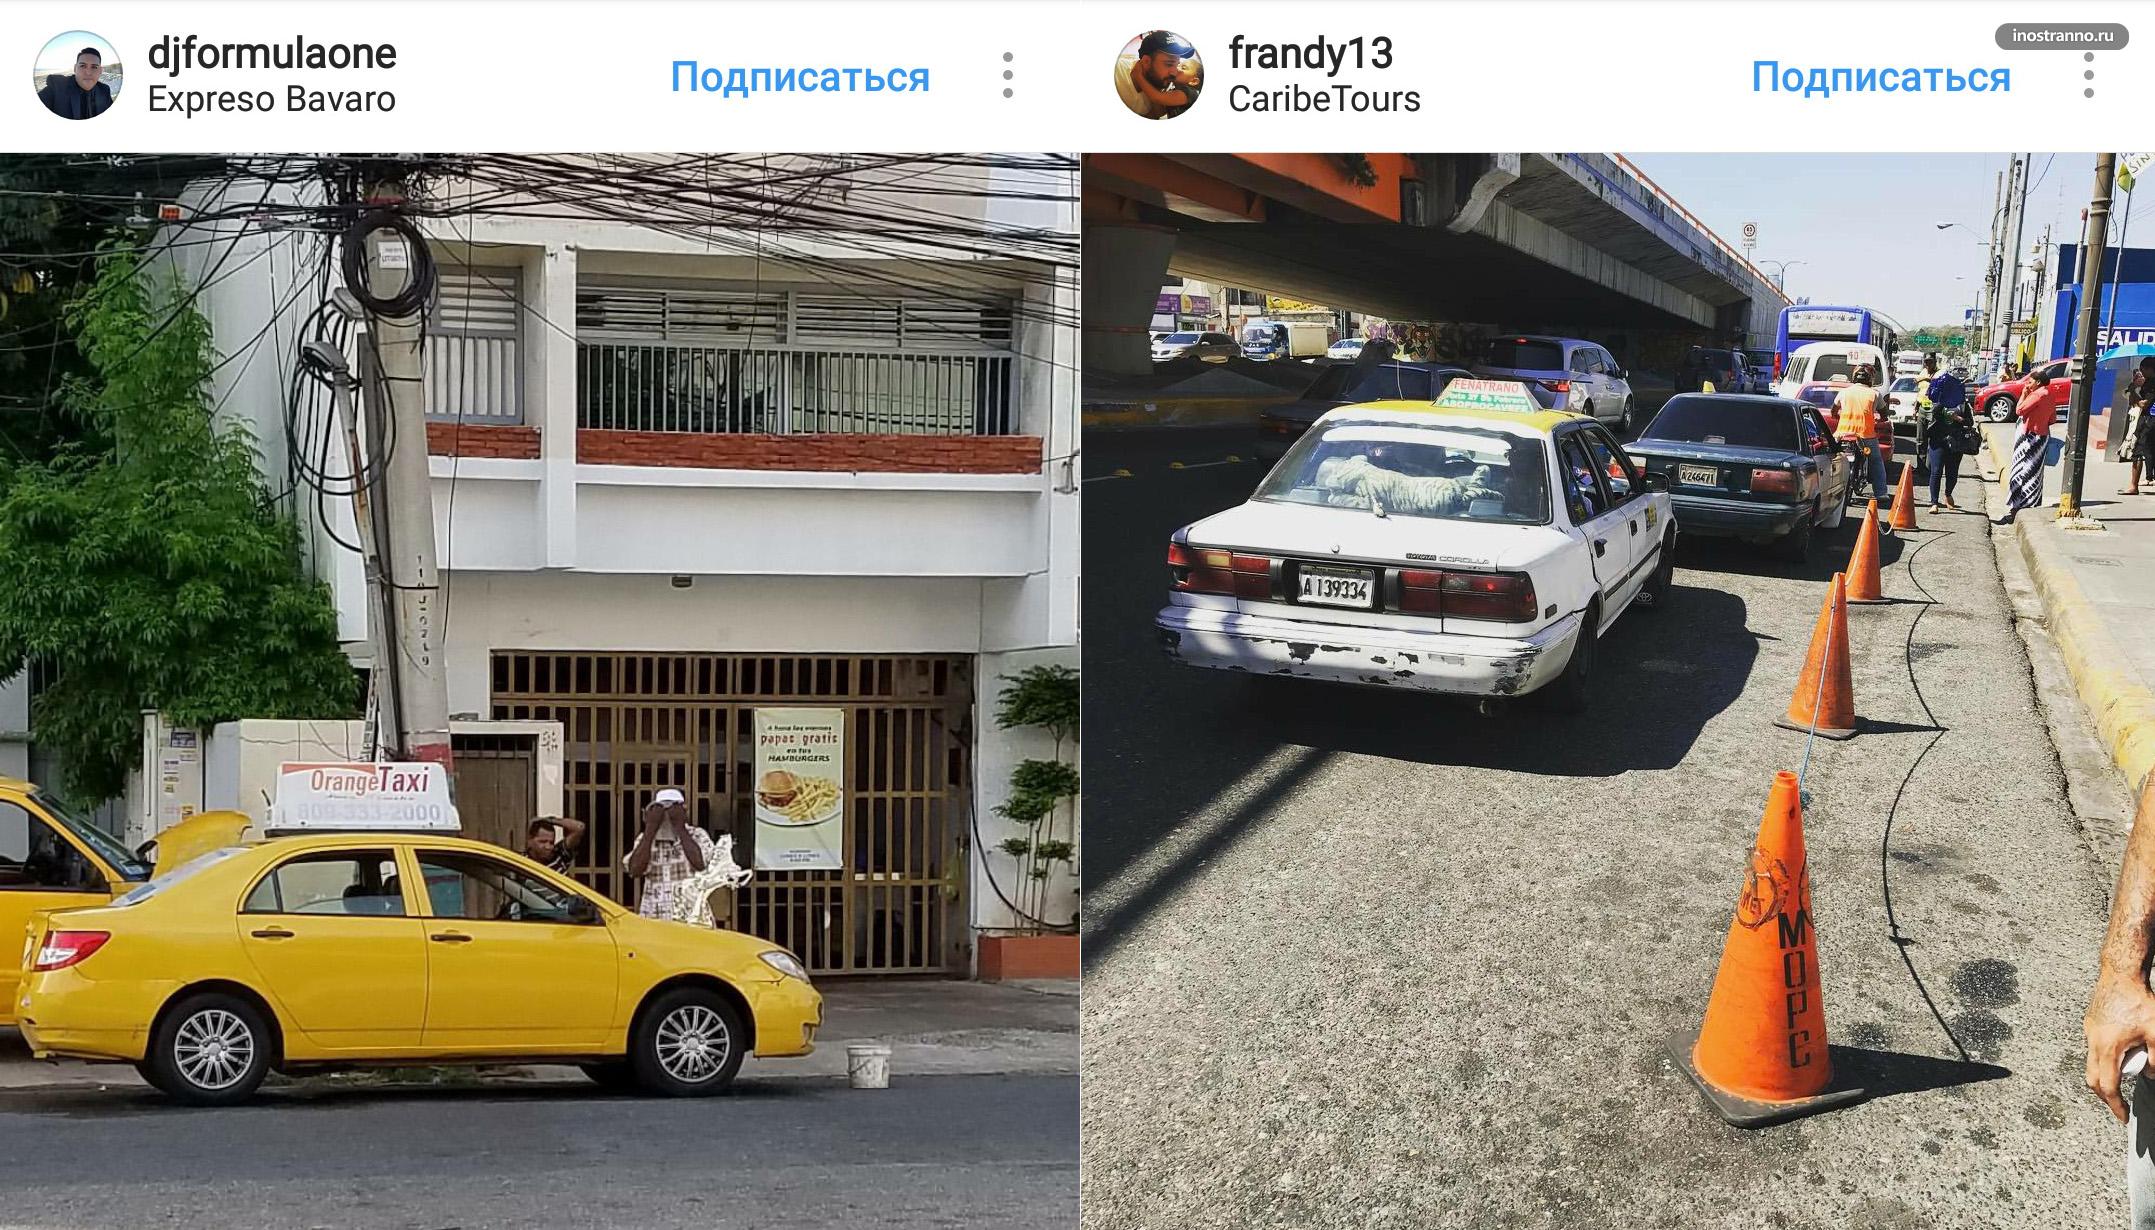 Такси в Доминикане и трансфер из аэропорта